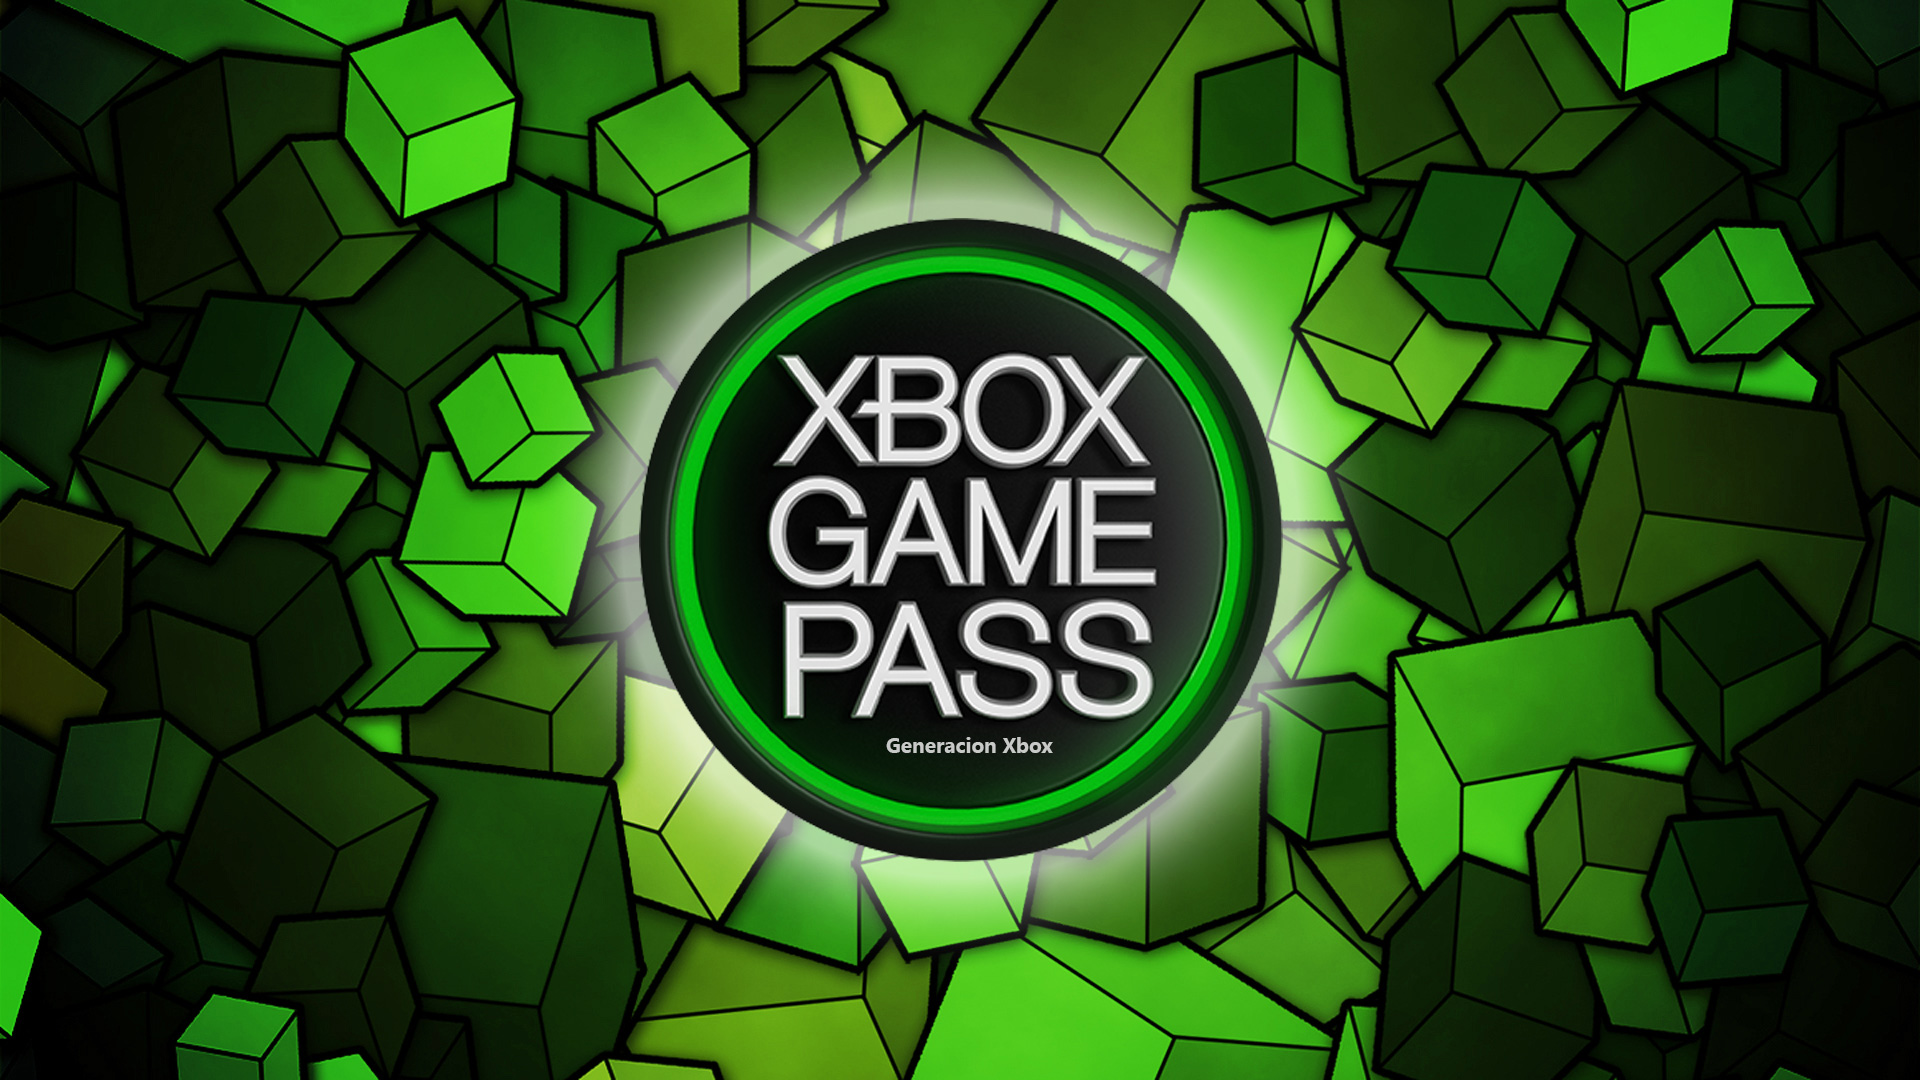 To pierwsze potwierdzone gry, które trafią do Xbox Game Pass w drugiej połowie marca